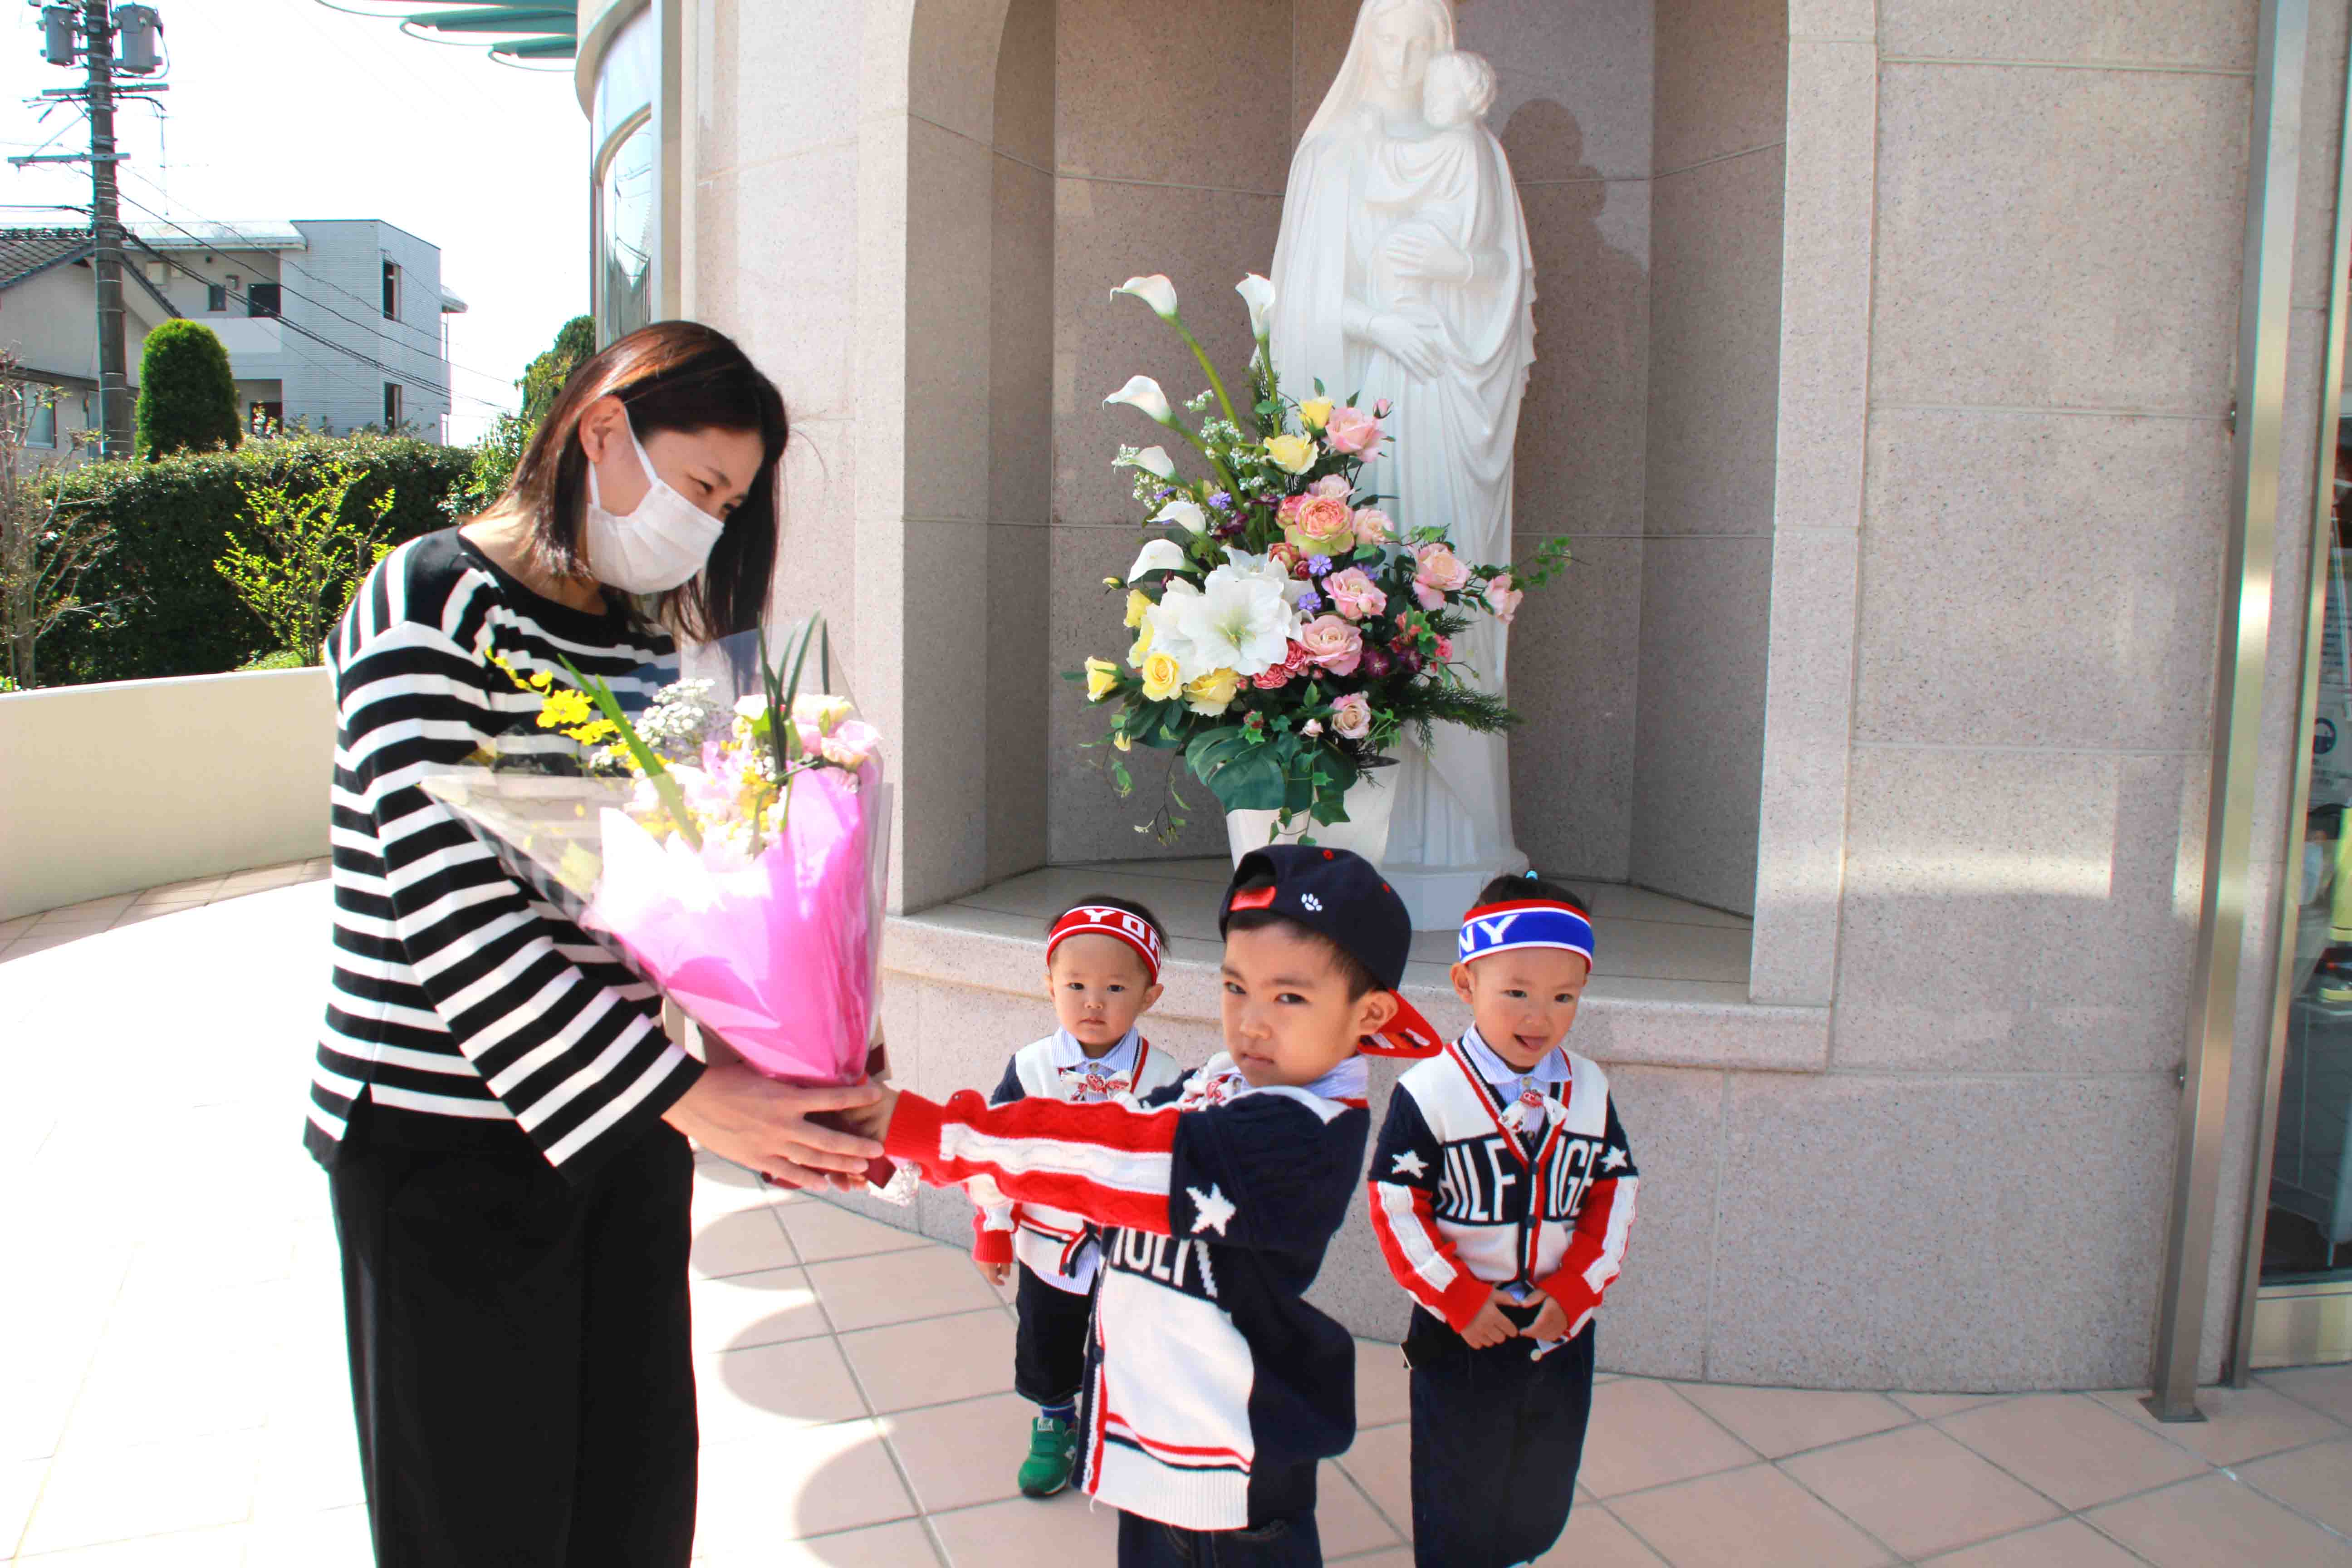 退院おめでとうございます 熊本市 産婦人科 無痛分娩 小児科 慈恵病院